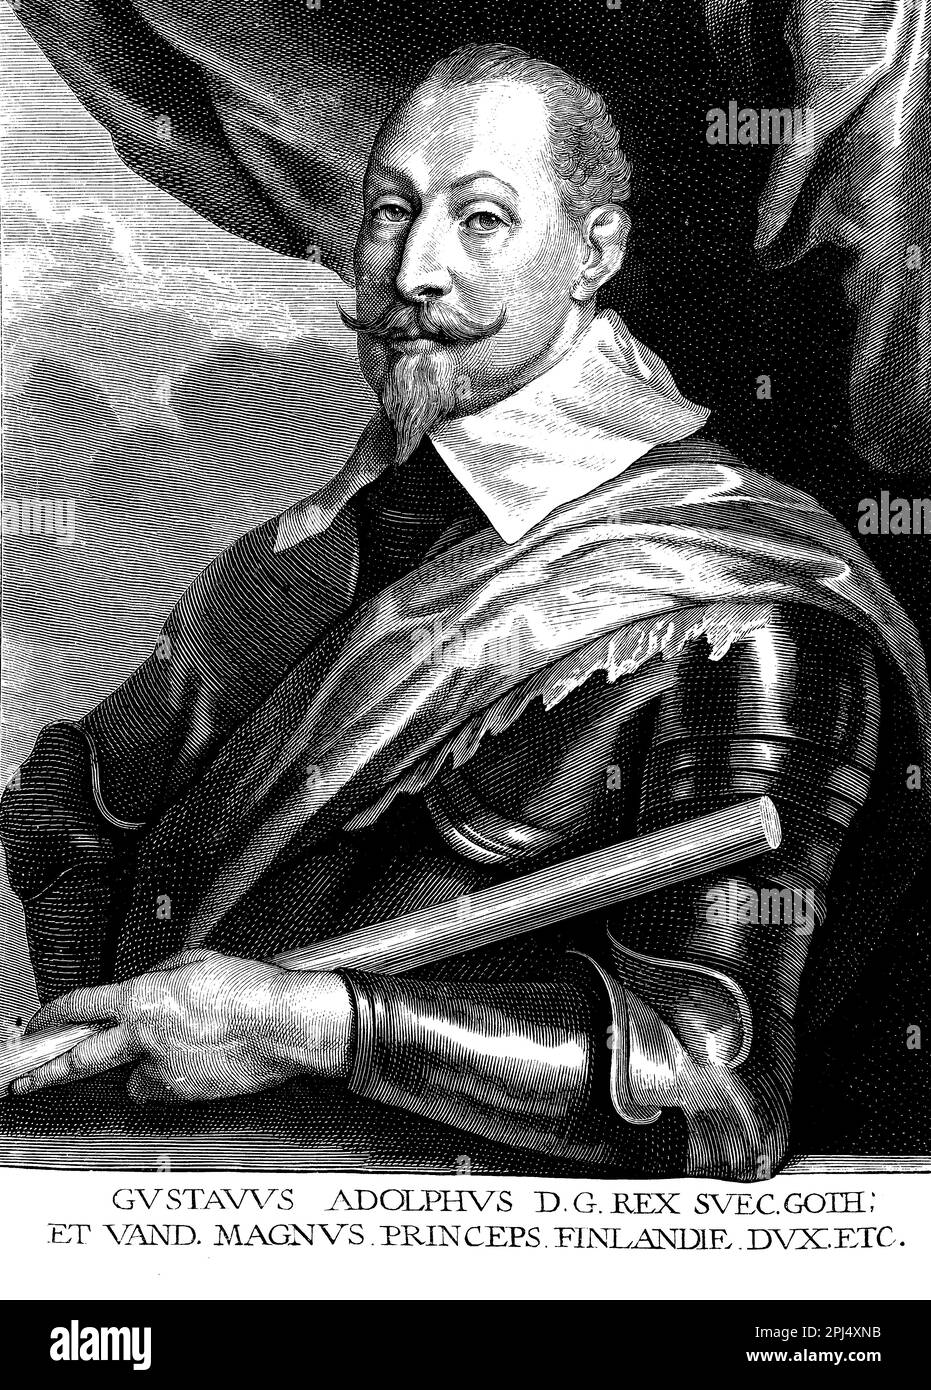 Gustav Adolf Vasa fu un re svedese che portò il paese all'indipendenza dalla Danimarca nel 16th° secolo. Riformò l'economia, la chiesa e l'istruzione, gettando le basi per la Svezia moderna Foto Stock